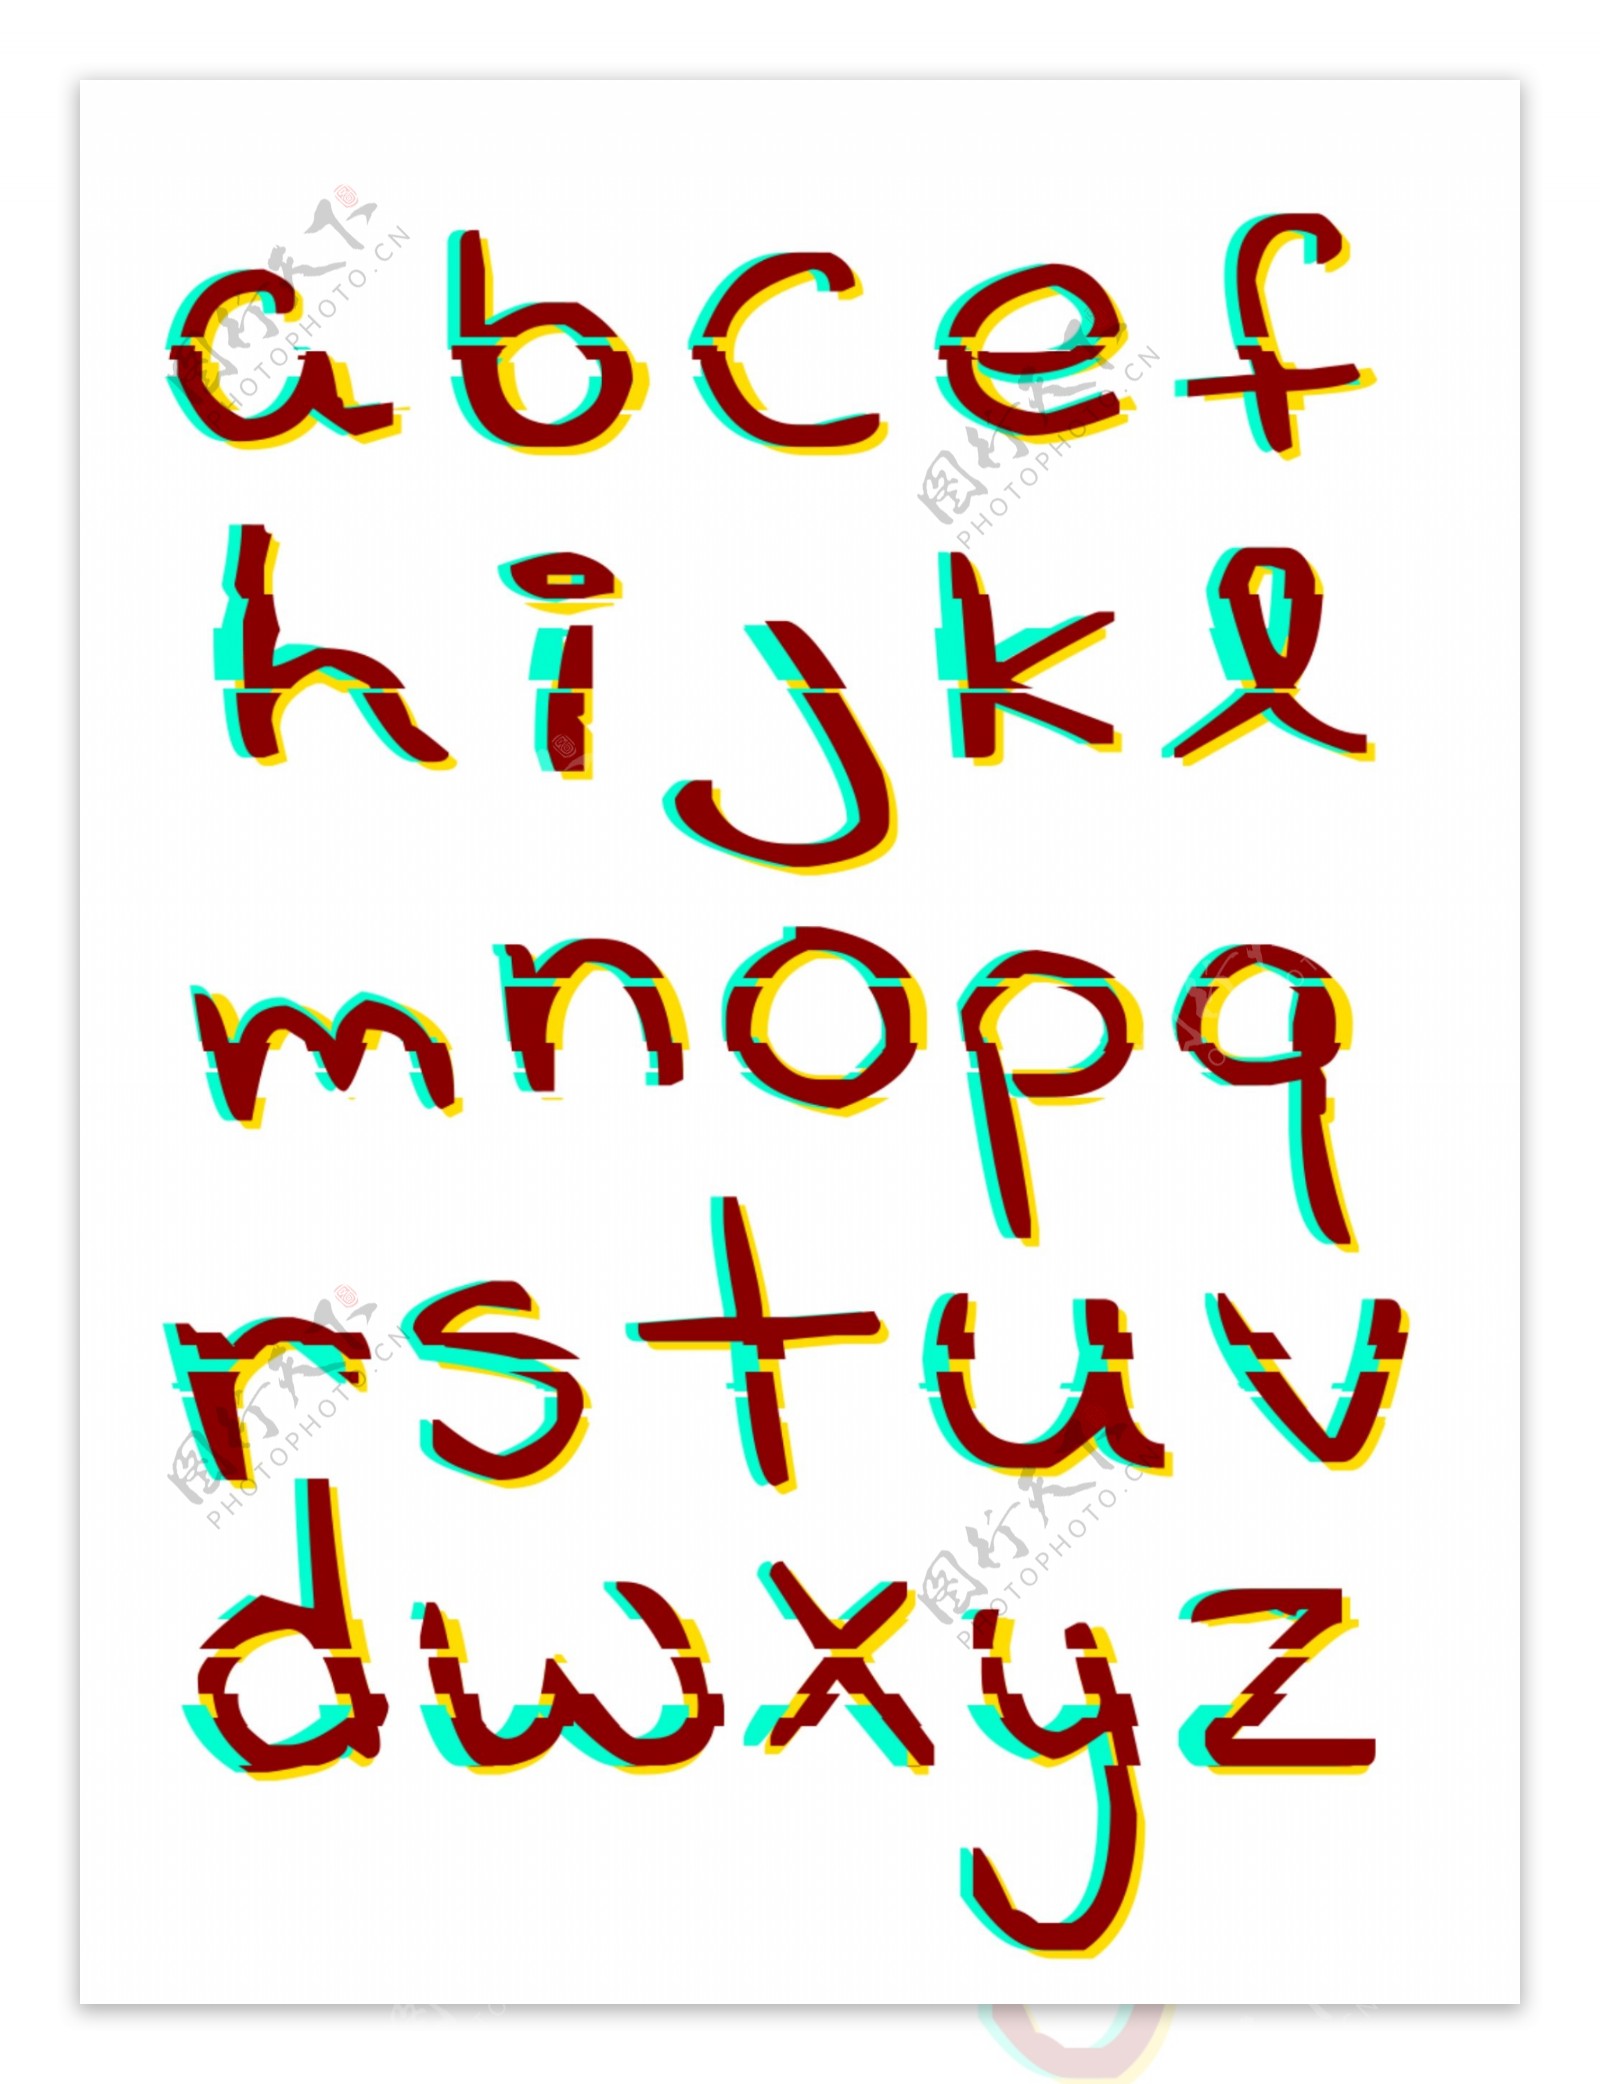 二十六字母小写创意色彩叠加故障风可商用